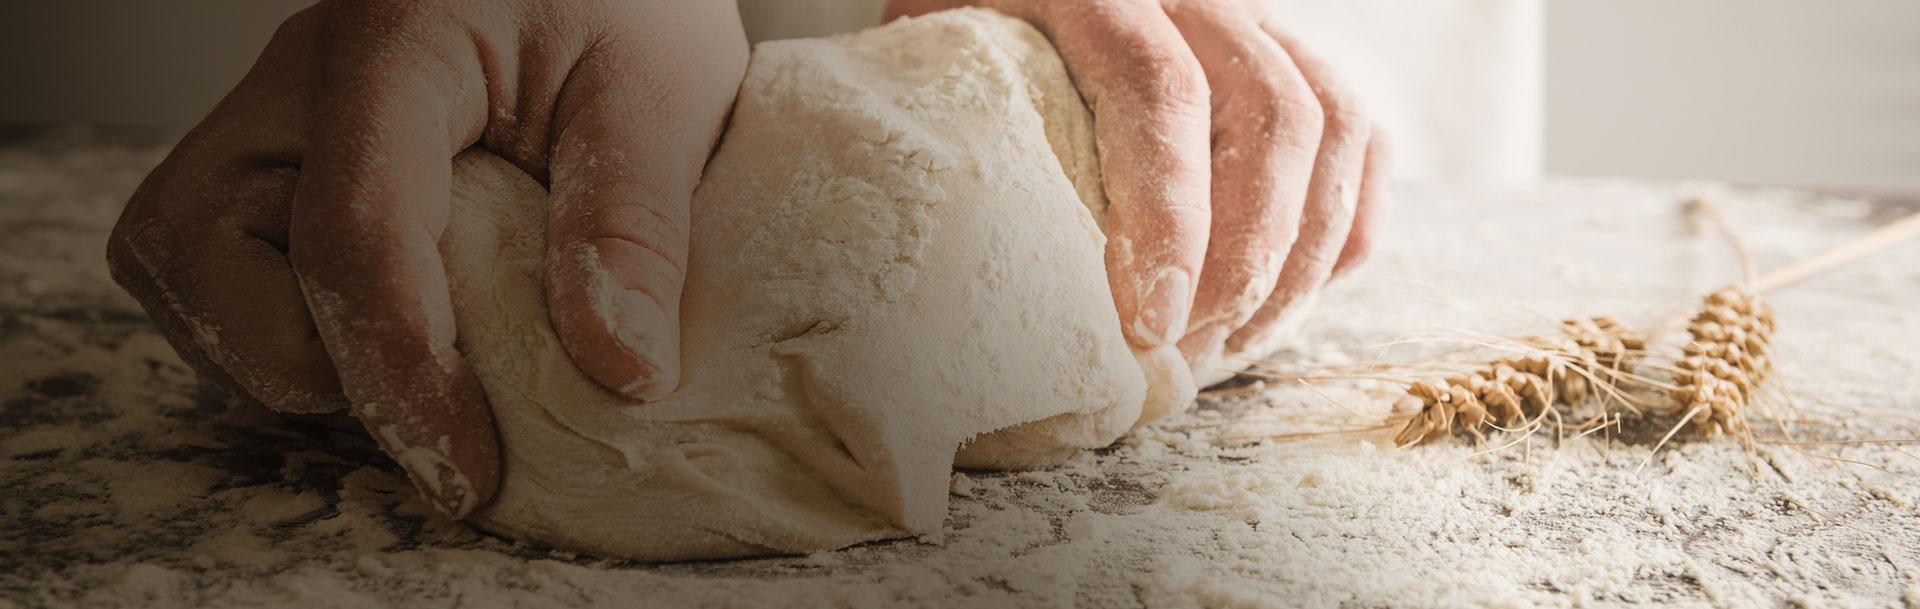 Chleb w trakcie wytwarzania